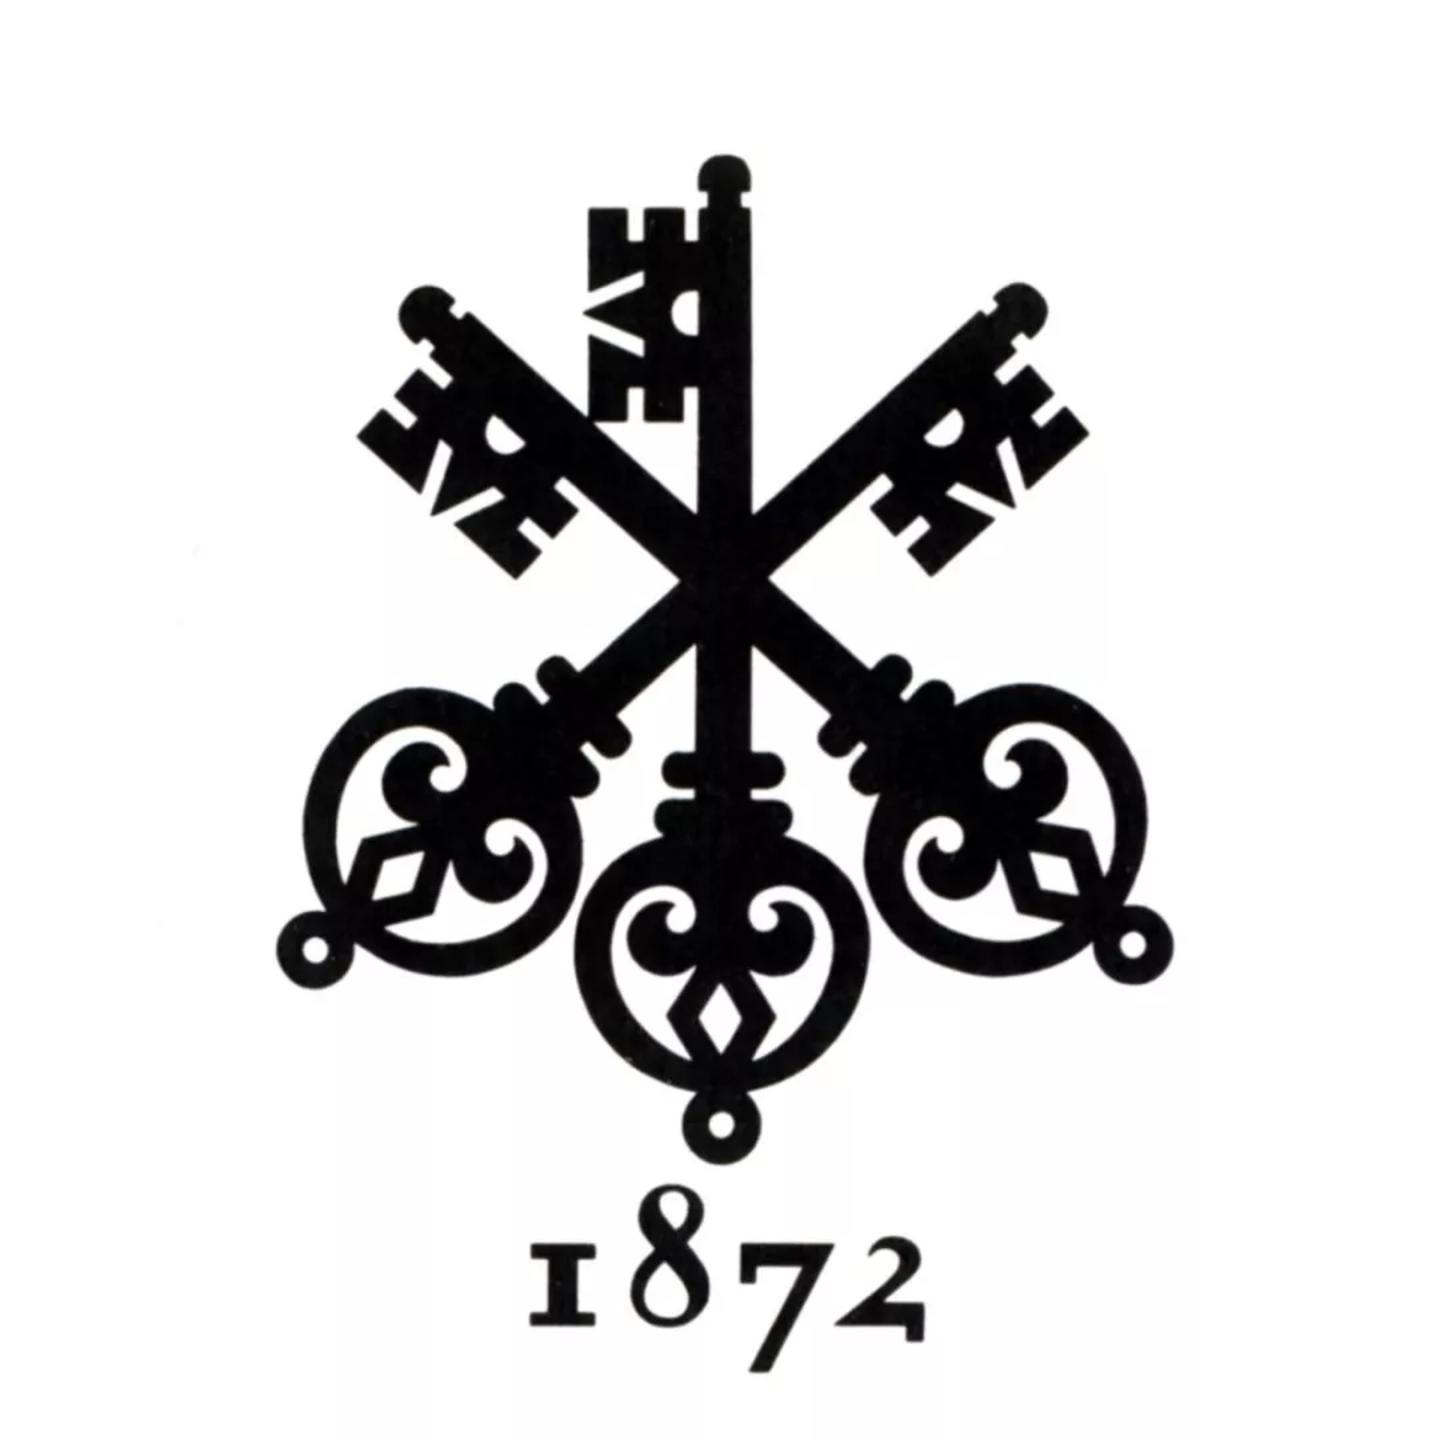 一百多年前,瑞士银行(ubs)就开始使用三只交叉的钥匙作为集团标志